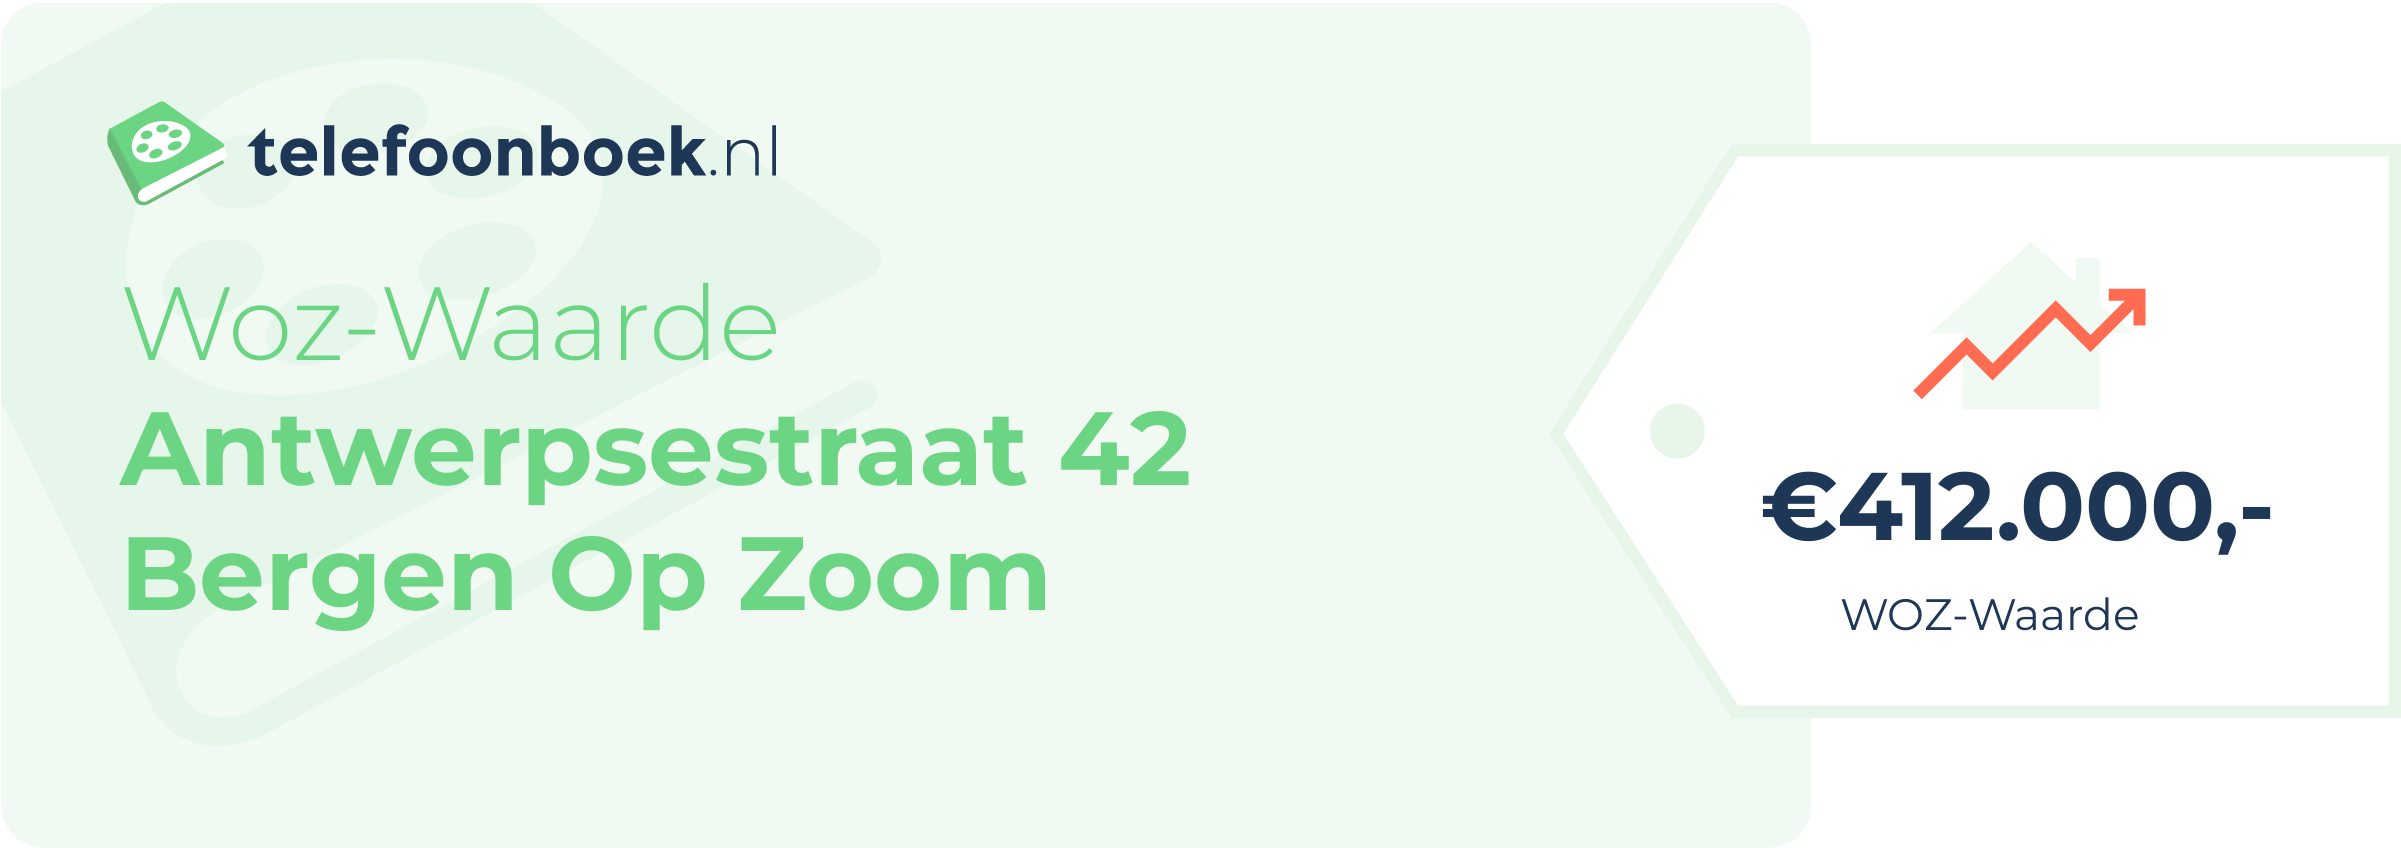 WOZ-waarde Antwerpsestraat 42 Bergen Op Zoom